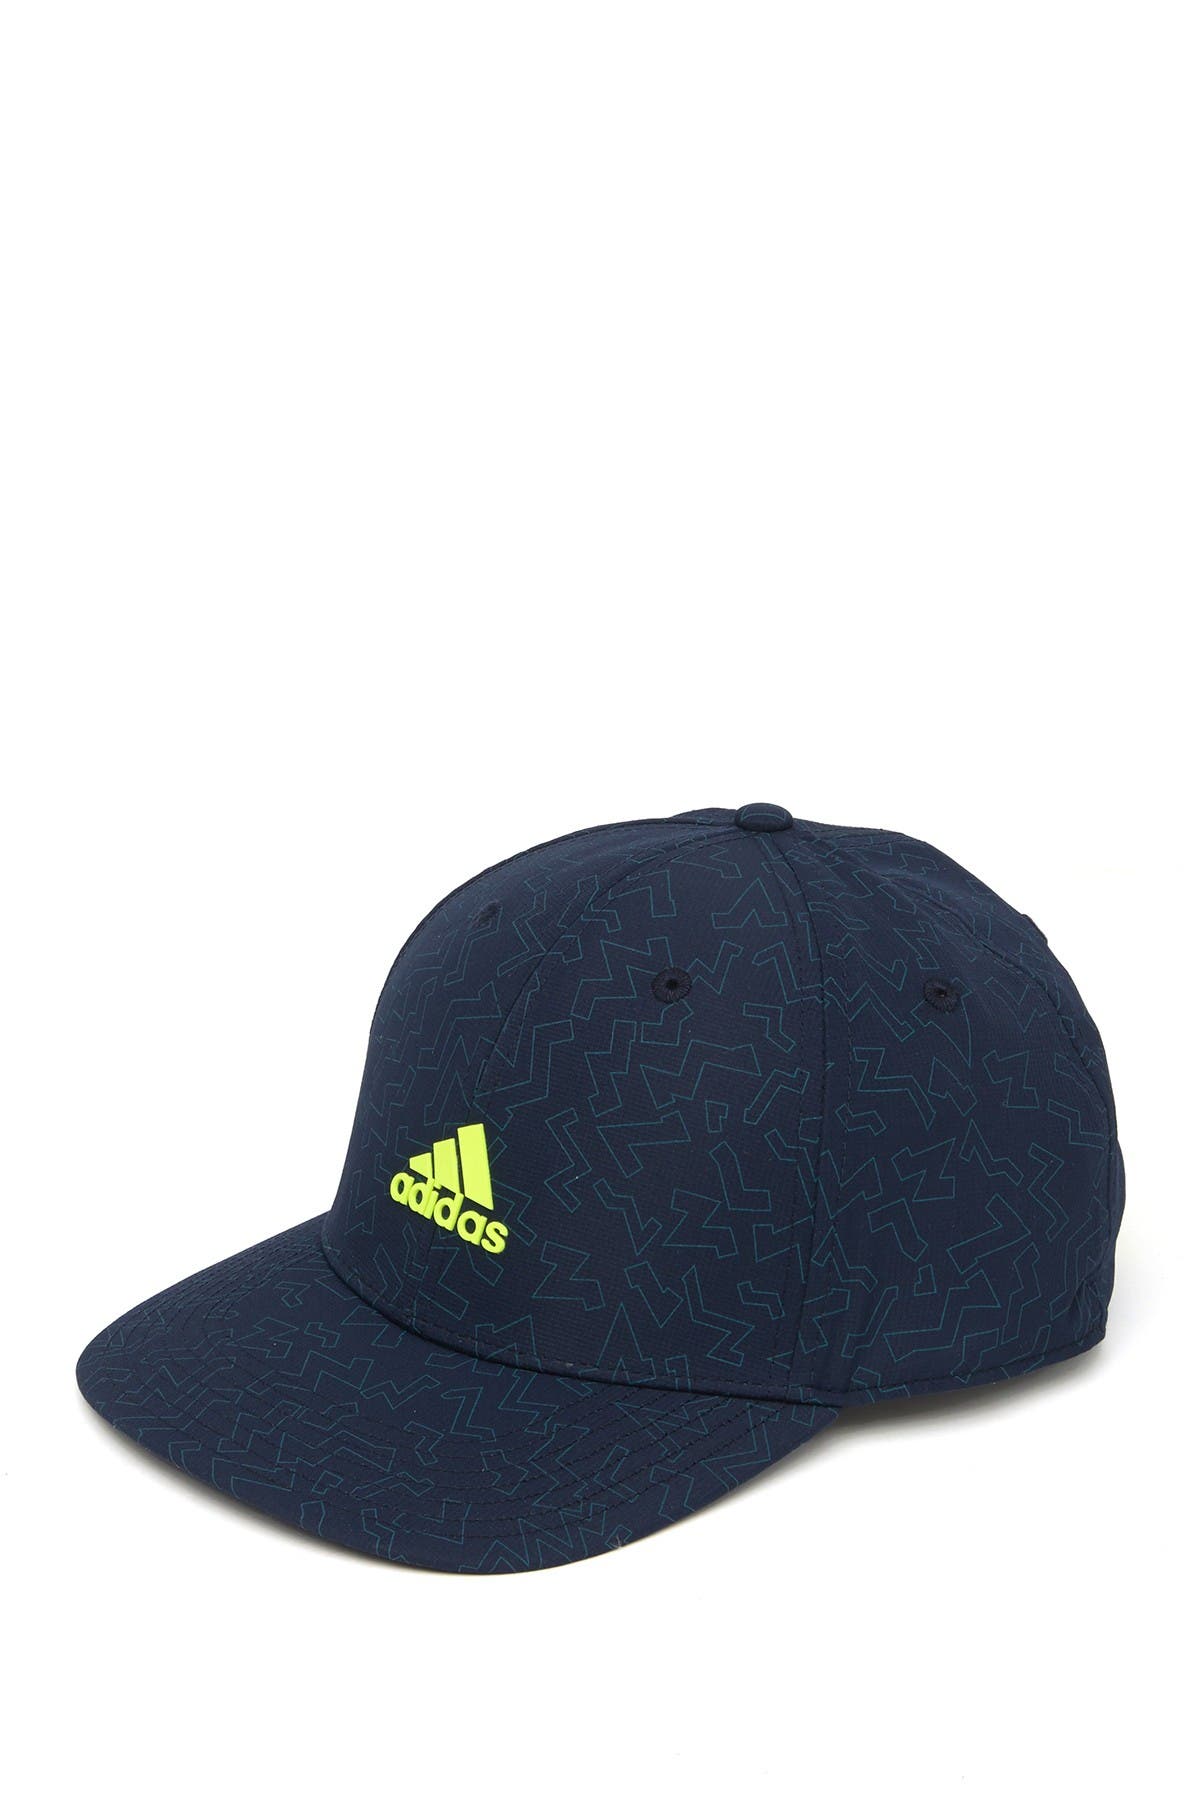 Adidas Golf Golf Color Pop Hat In Conavy